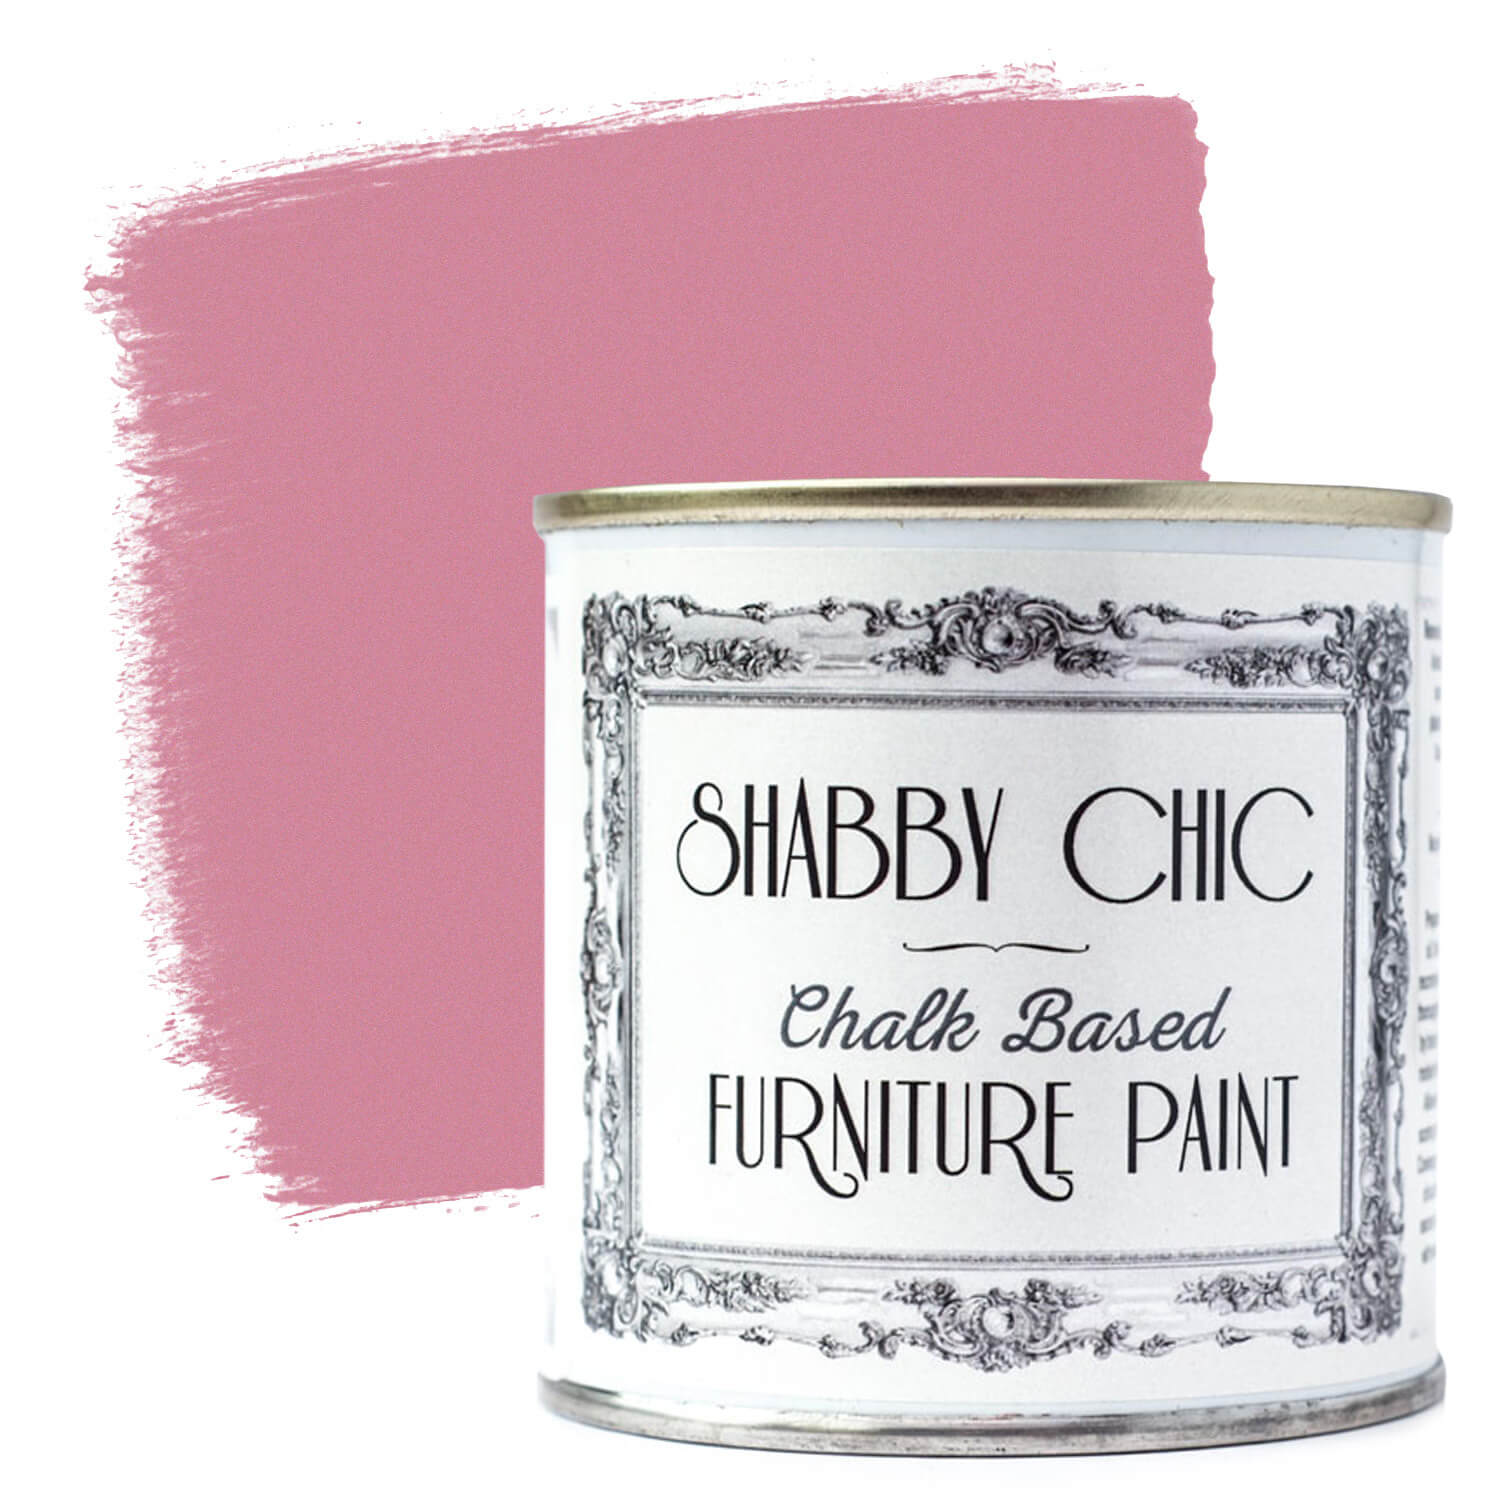 Metallic Pink Shabby Chic Furiture Paint